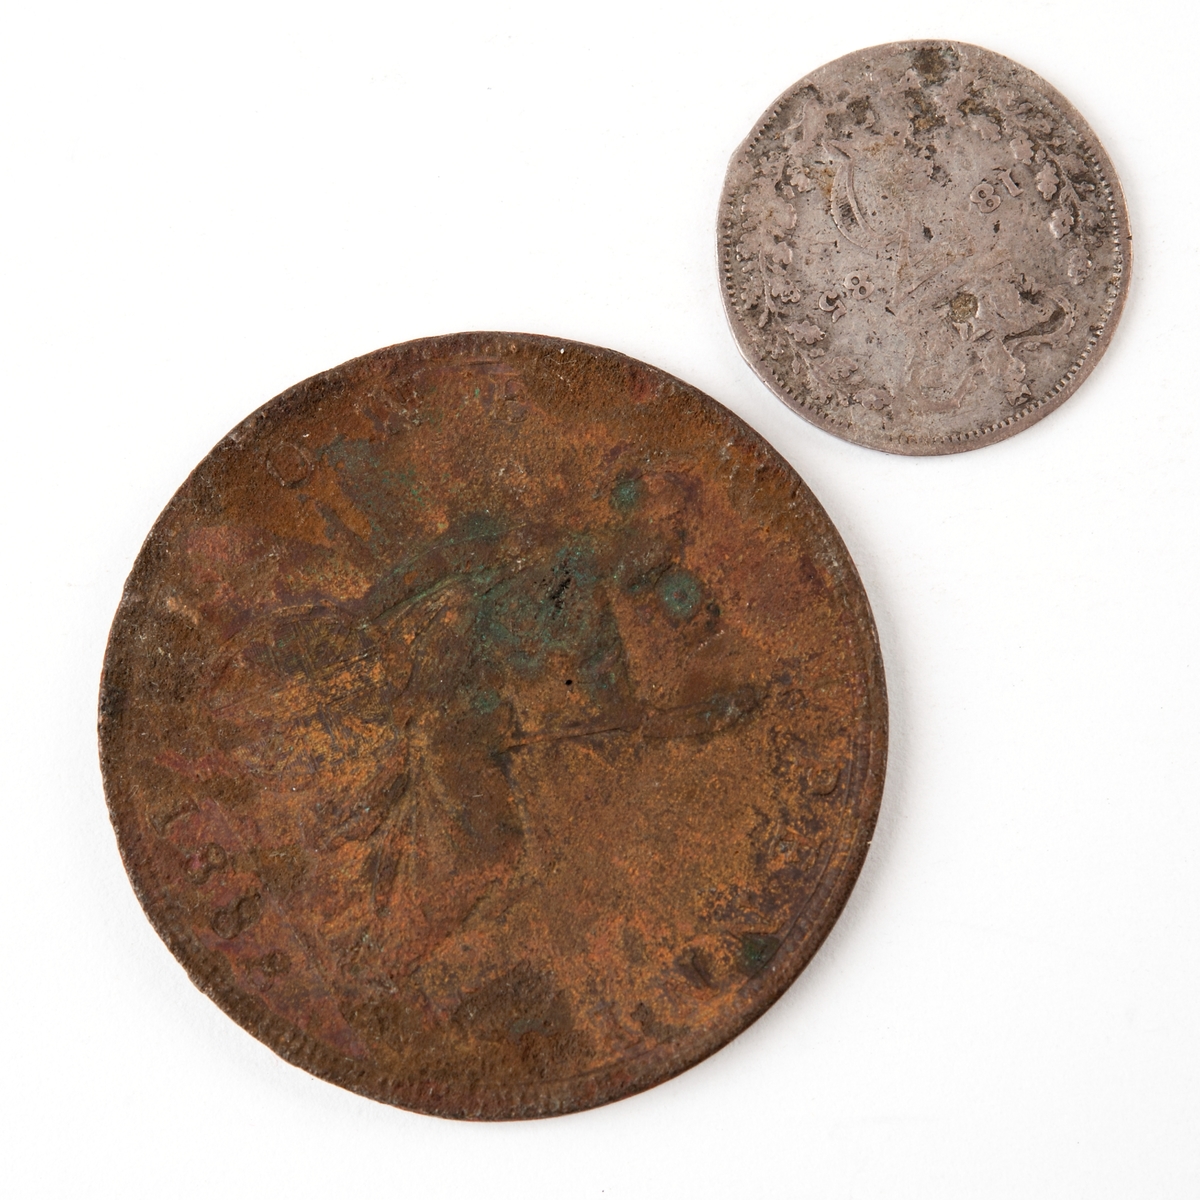 Brittiska mynt präglade 1885 respektive 1888